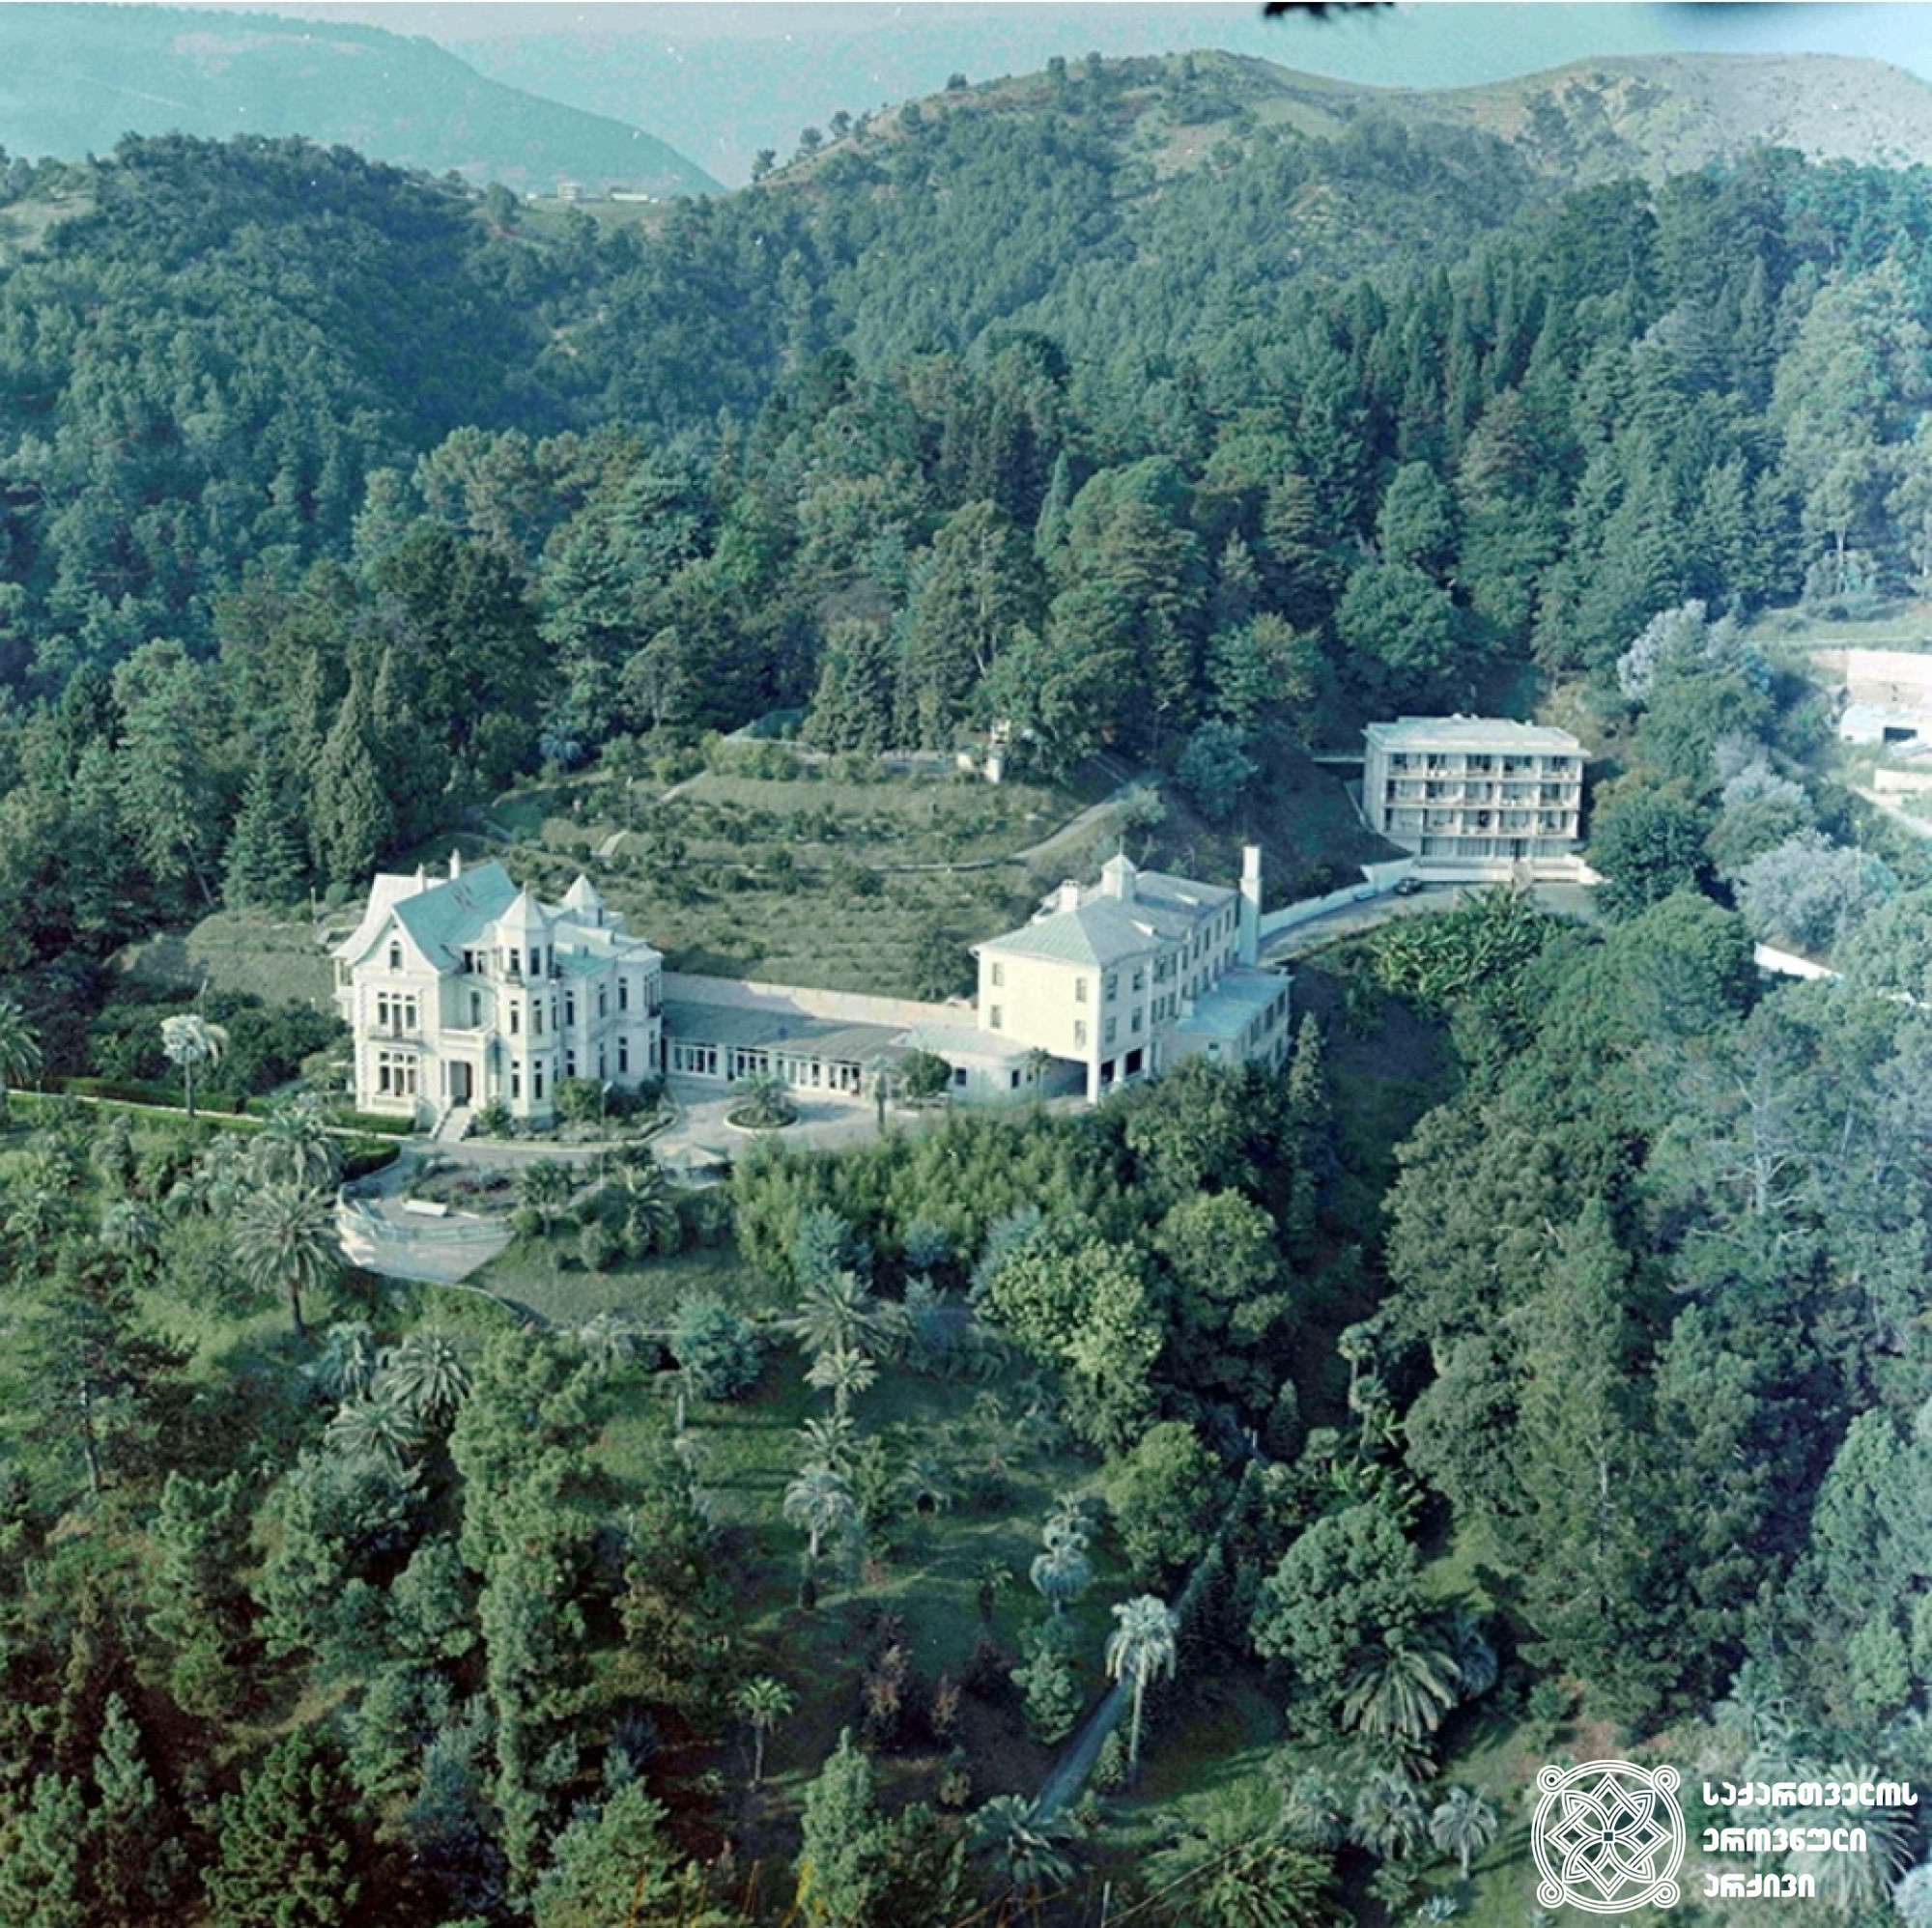 მინისტრთა საბჭოს სანატორიუმი <br>
1971 წელი. ფოტოს ავტორი ოთარ თურქია <br>
Sanatorium of the Council of Ministers <br>
1971. Photo by Otar Turkia